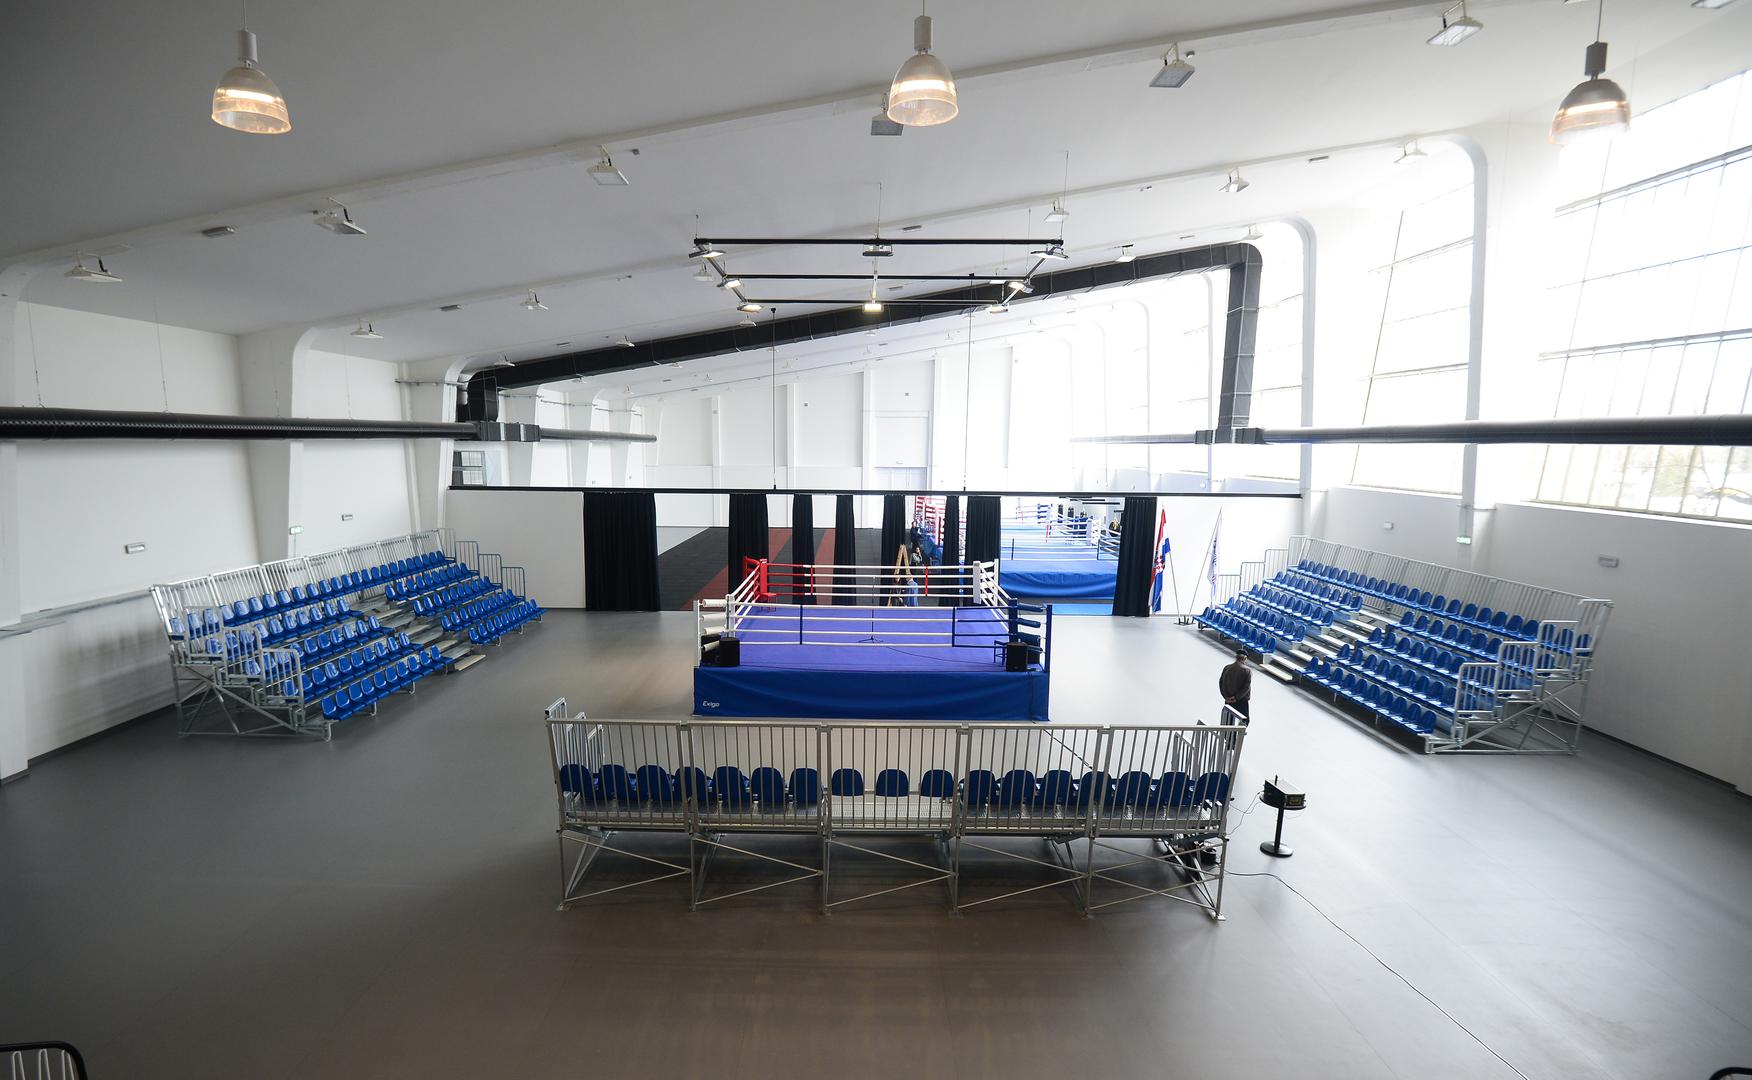 Filip Hrgović ističe da je ovo velika stvar za boks, dok je izbornik boksačke reprezentacije Leonardo Pijetraj rekao da ovakvu dvoranu nije vidio ni u Las Vegasu.